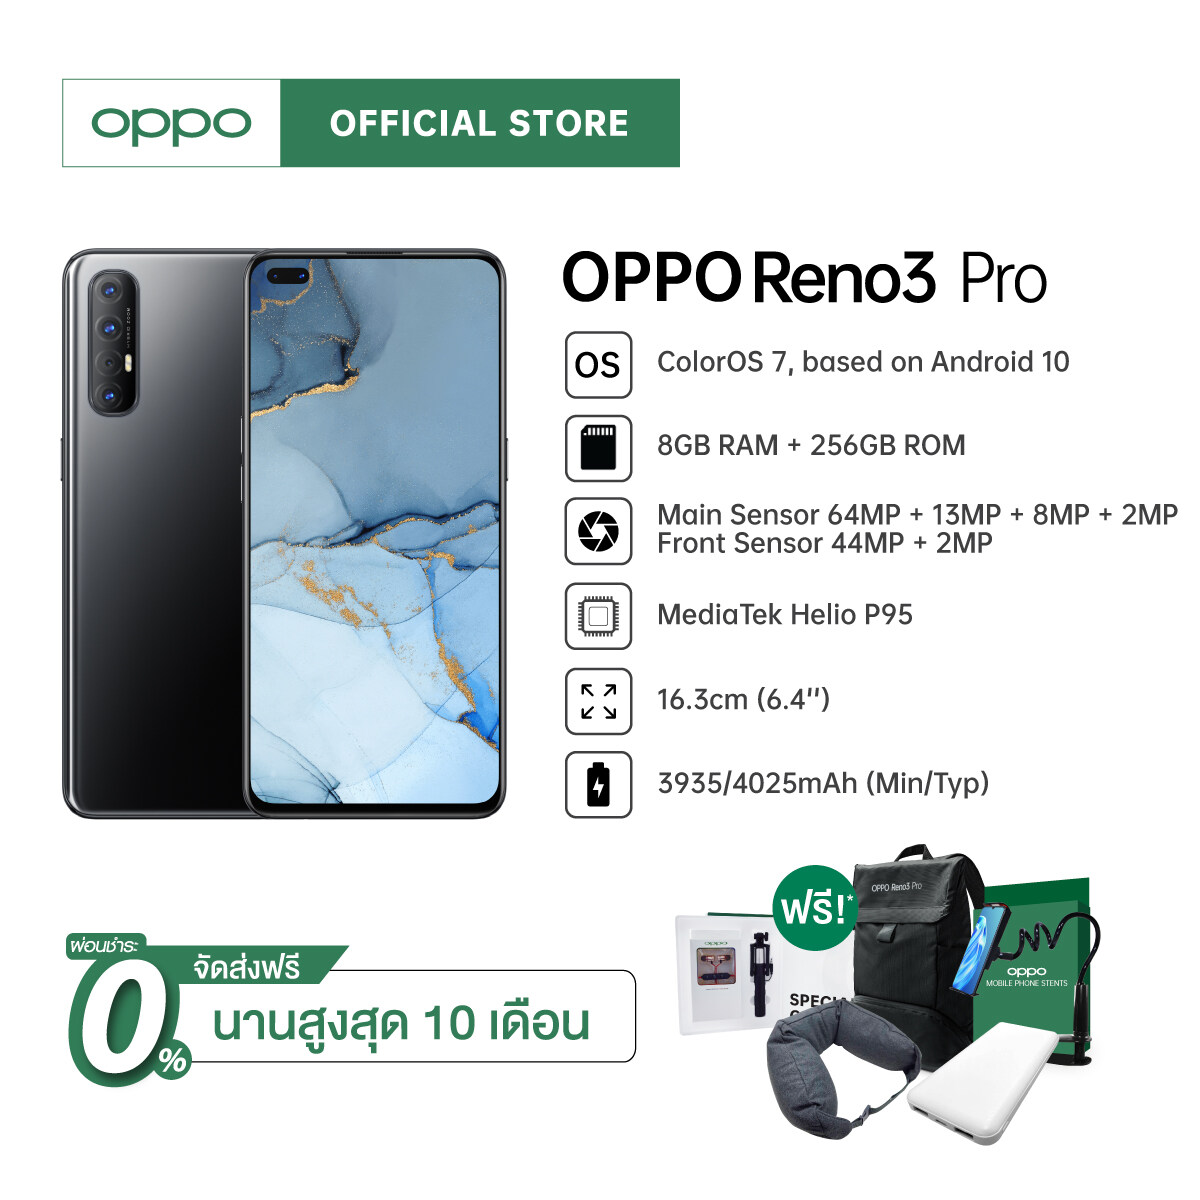 (ผ่อน 0% ฟรีของแถม) ใหม่ล่าสุด! OPPO Reno3 Pro 8+256GB กล้องหน้าคู่สวย 44 MP | รับประกัน 12 เดือน | ผ่อนนานสูงสุด 10 เดือน